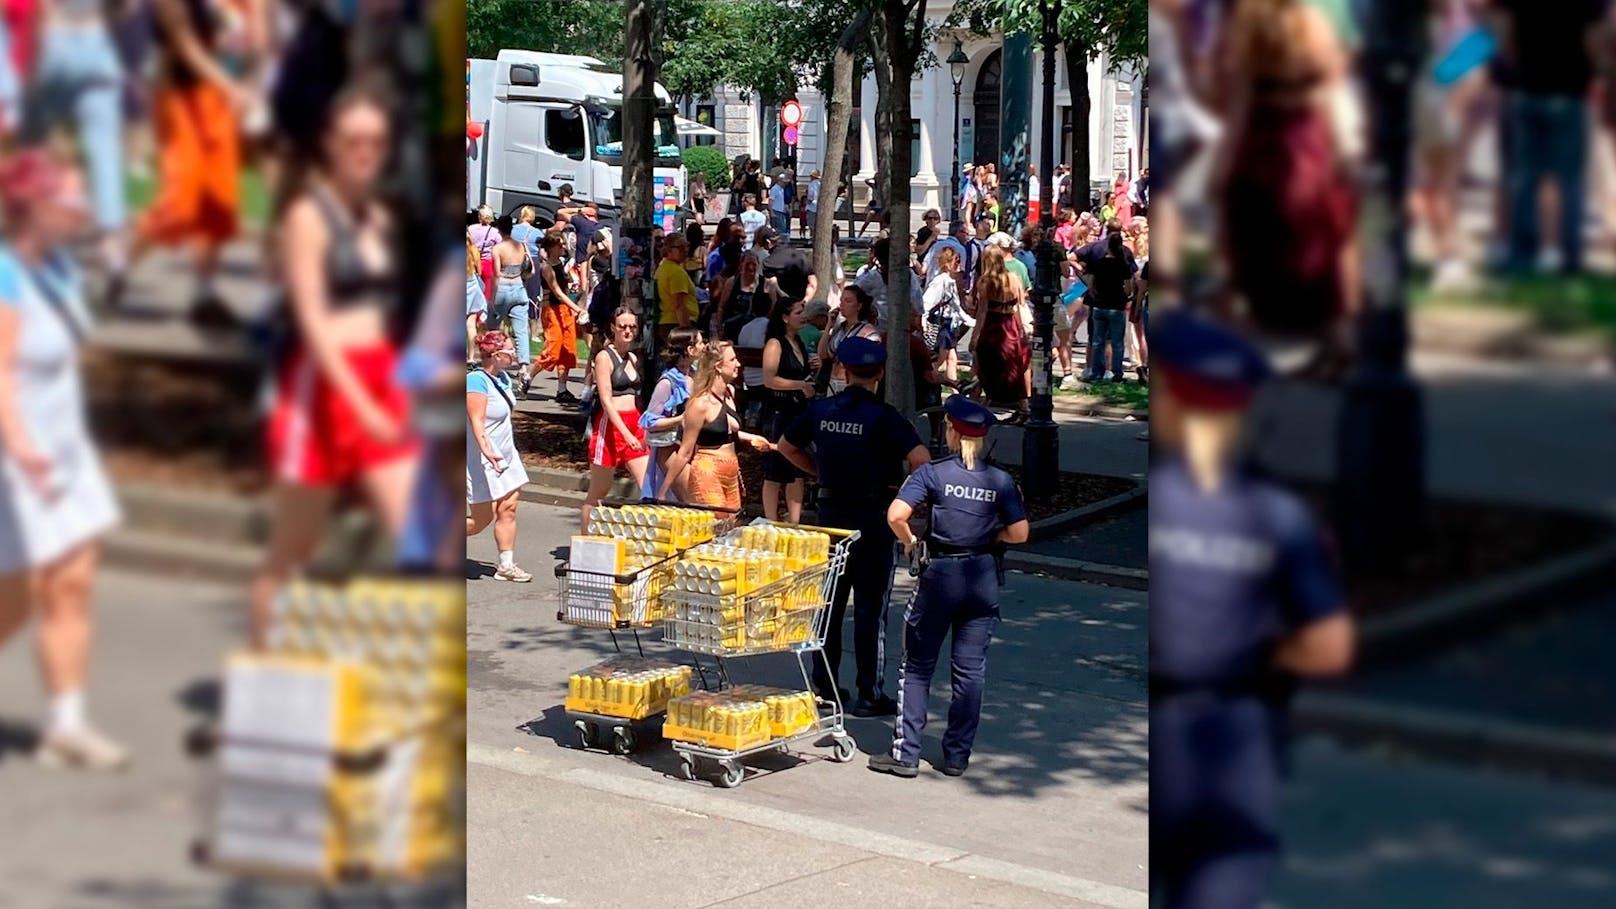 Bier-Razzia! Polizei greift bei Regenbogen-Parade durch